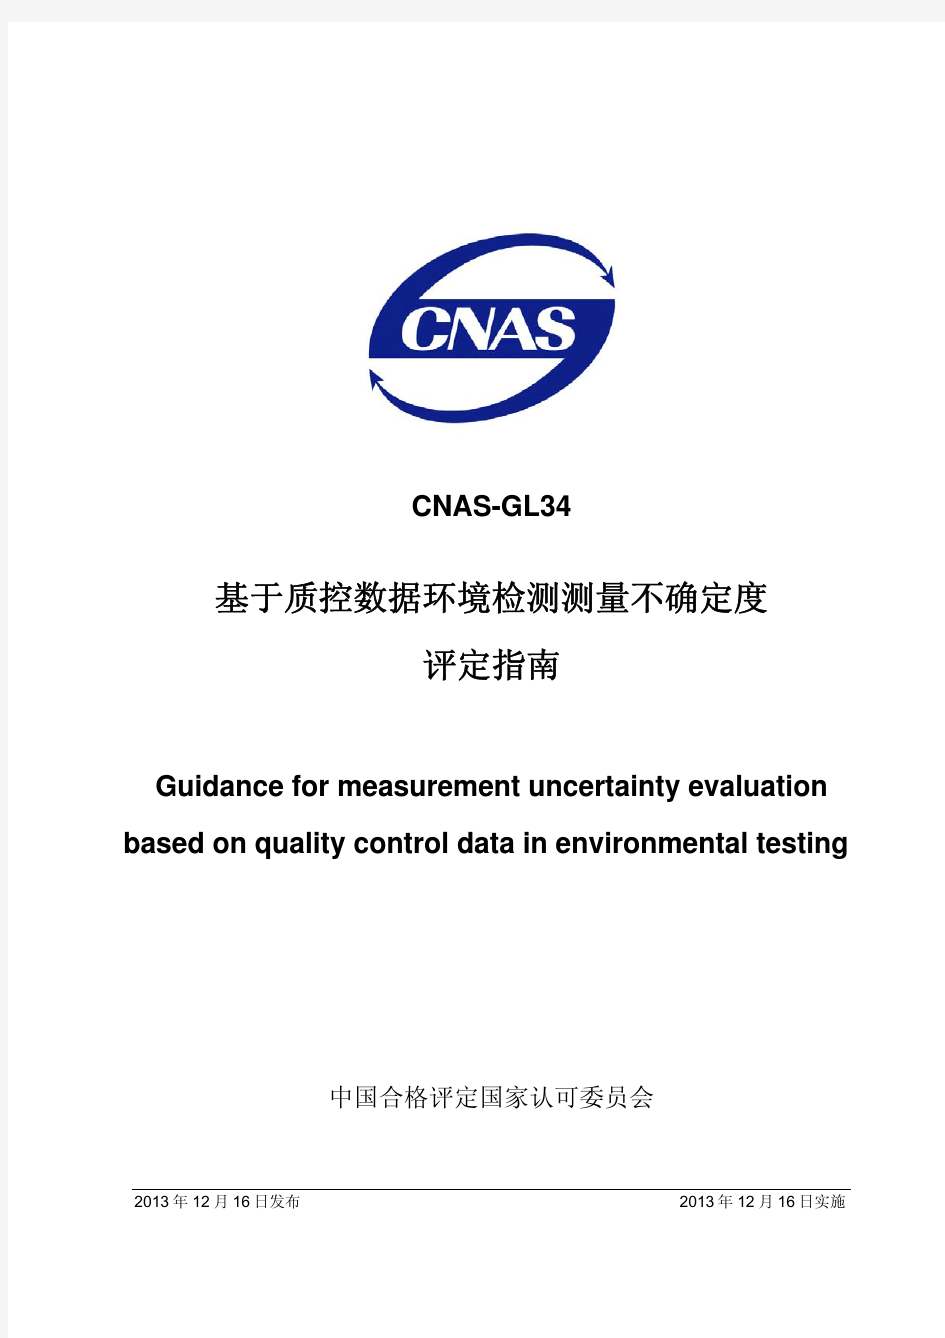 CNAS-GL34：2013《基于质控数据环境检测测量不确定度评定指南》